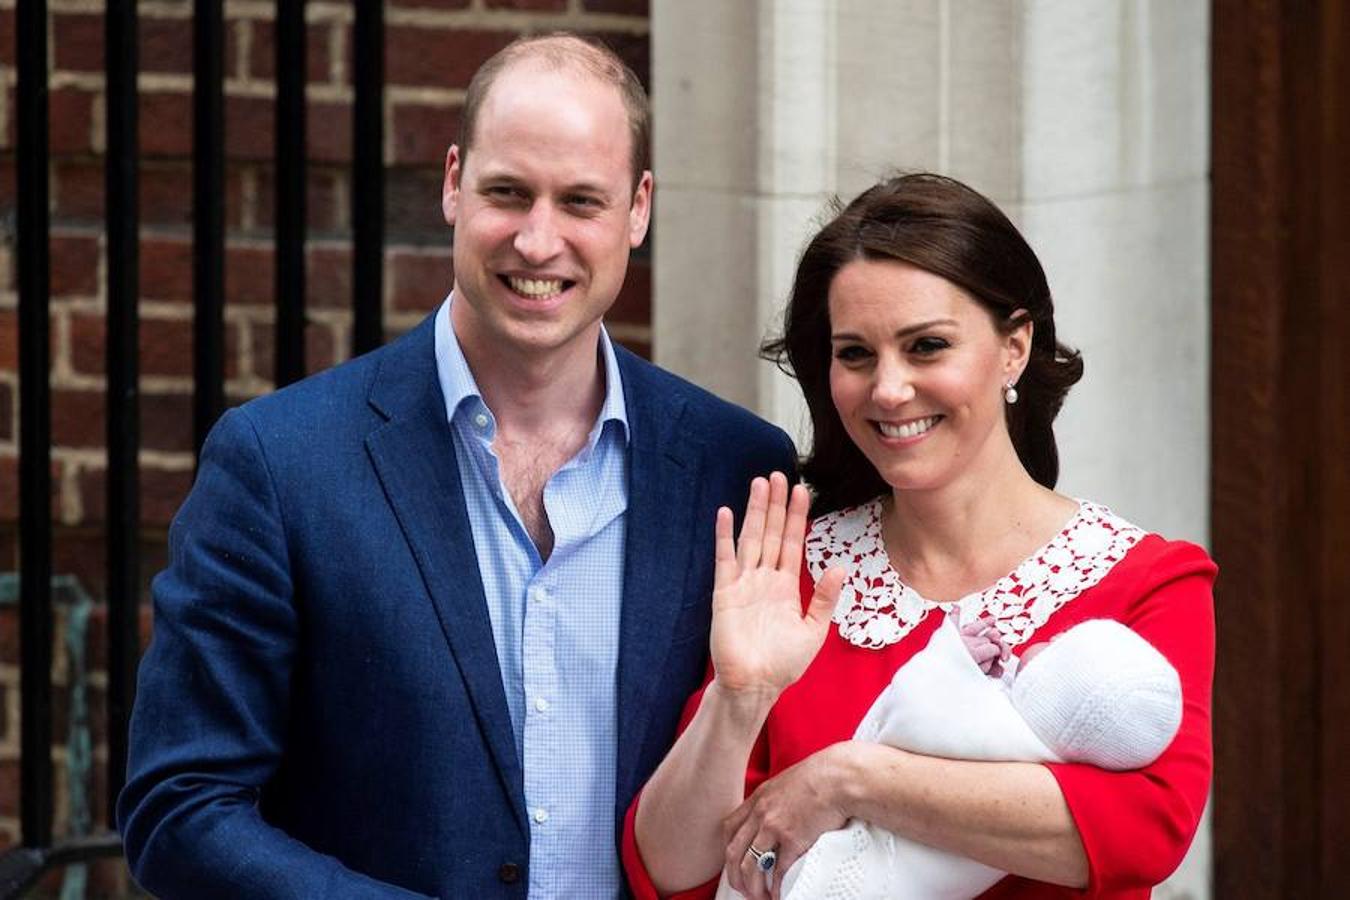 La duquesa de Cambridge ha dado a luz a su tercer hijo, un varón que pesó 3,8 kilos. Kate Middleton parió este lunes por la mañana y por la tarde salió del hospital con el bebé en brazos